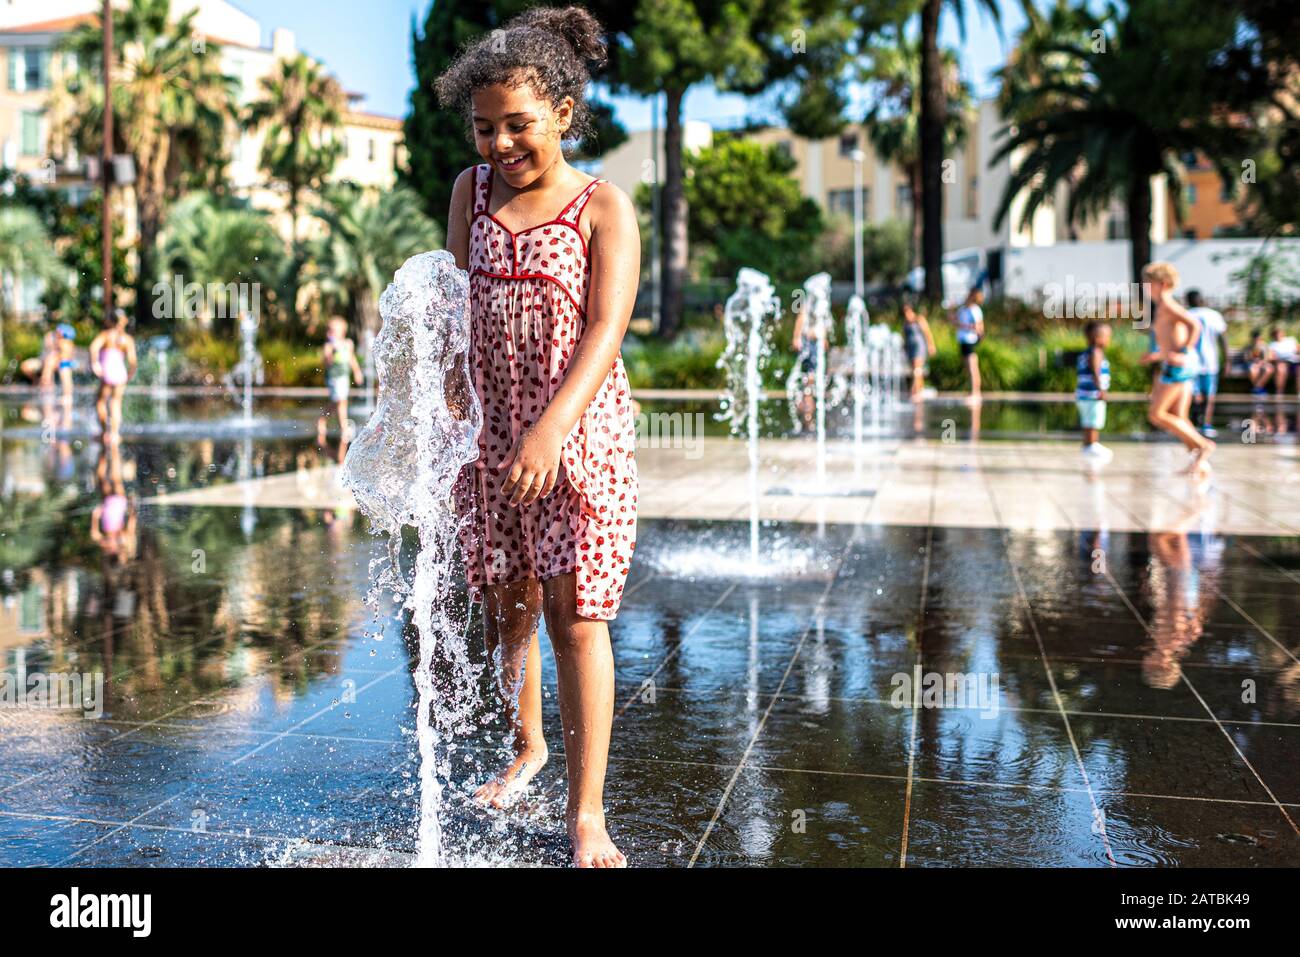 Das Kind hat Spaß mit einem Wasserstrahl, der sich im Mirroir d'eau am neuen städtischen Ort, der Promenade du Paillon in Nizza, Frankreich, befindet Stockfoto